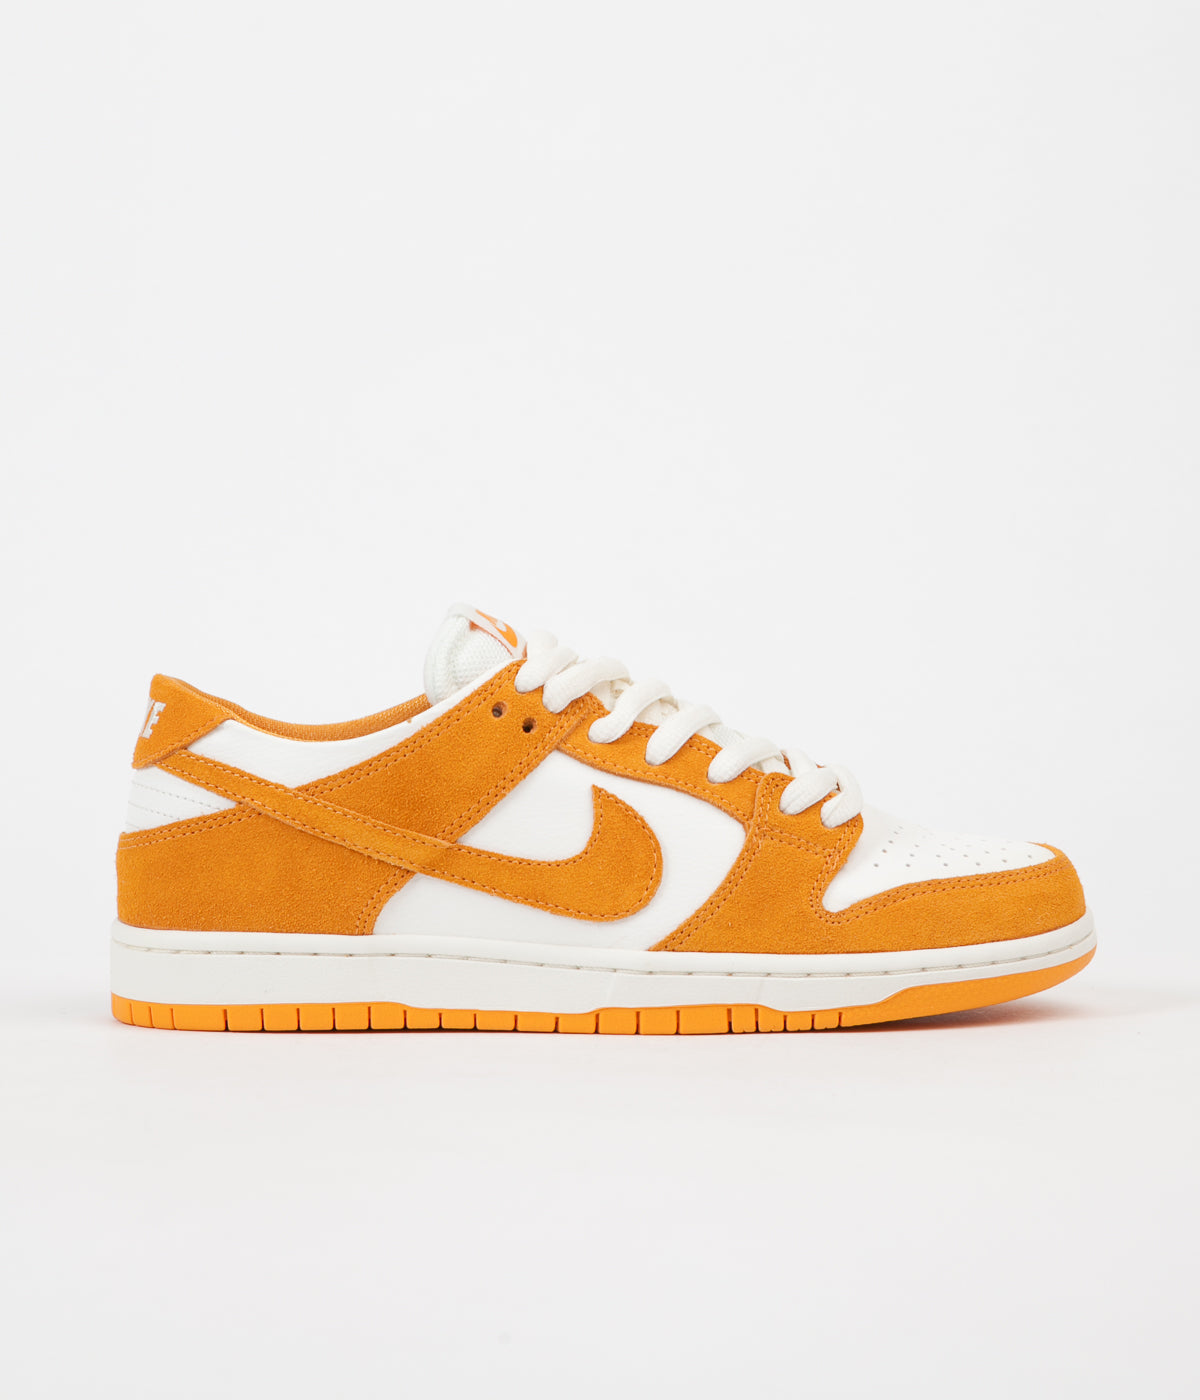 Nike SB Dunk Low Pro Shoes - Circuit Orange / Circuit Orange / Sail ...